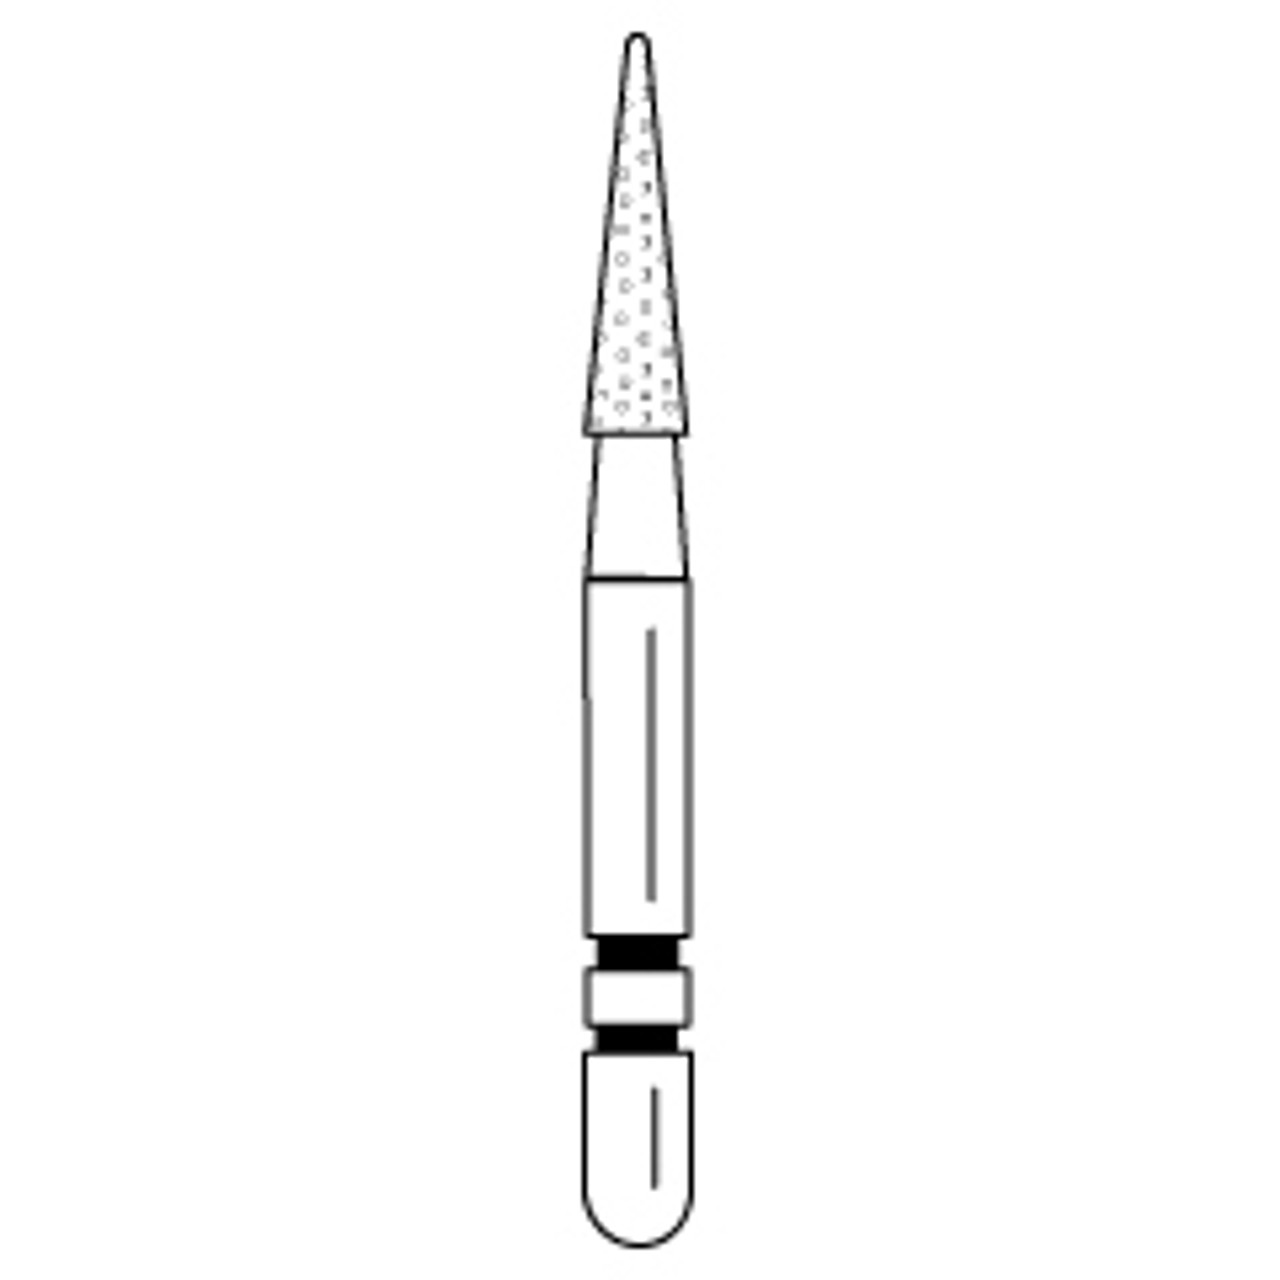 Premier - Two Striper Cone Diamonds Friction Grip Burs - 209.6C Coarse